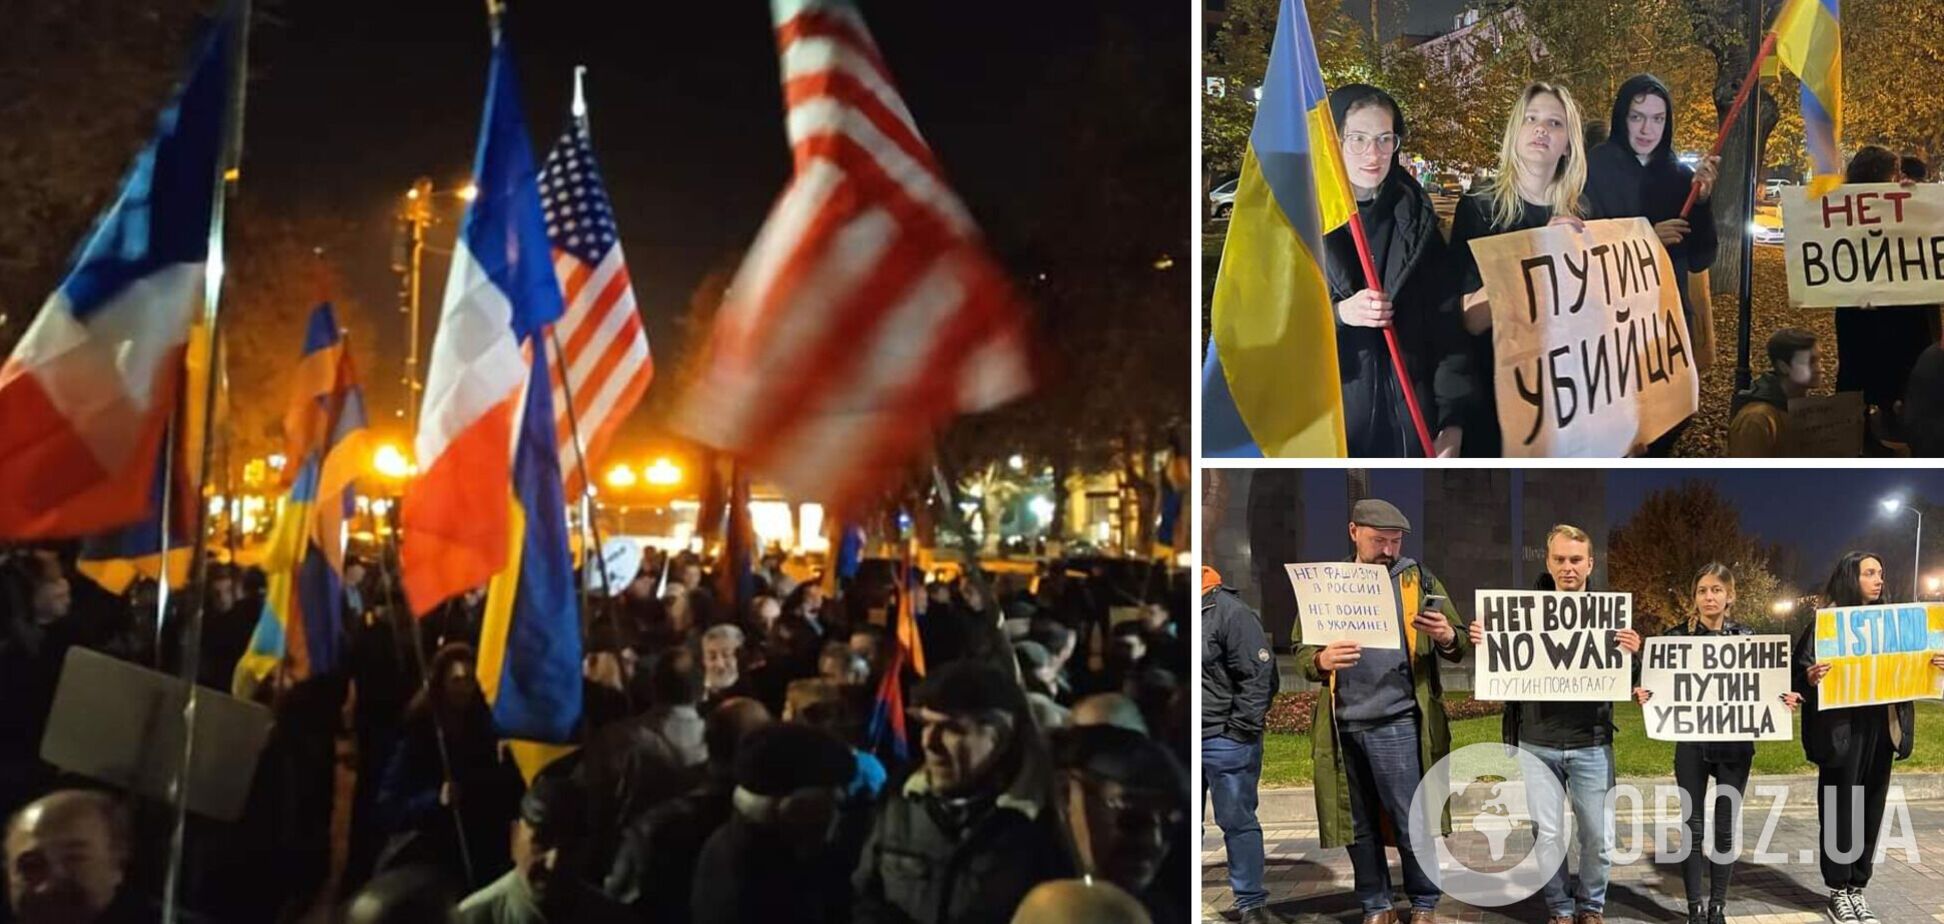 В Ереване в преддверии саммита ОДКБ провели антироссийскую акцию: люди вышли с флагами Украины и плакатами 'Путин – убийца'. Фото и видео